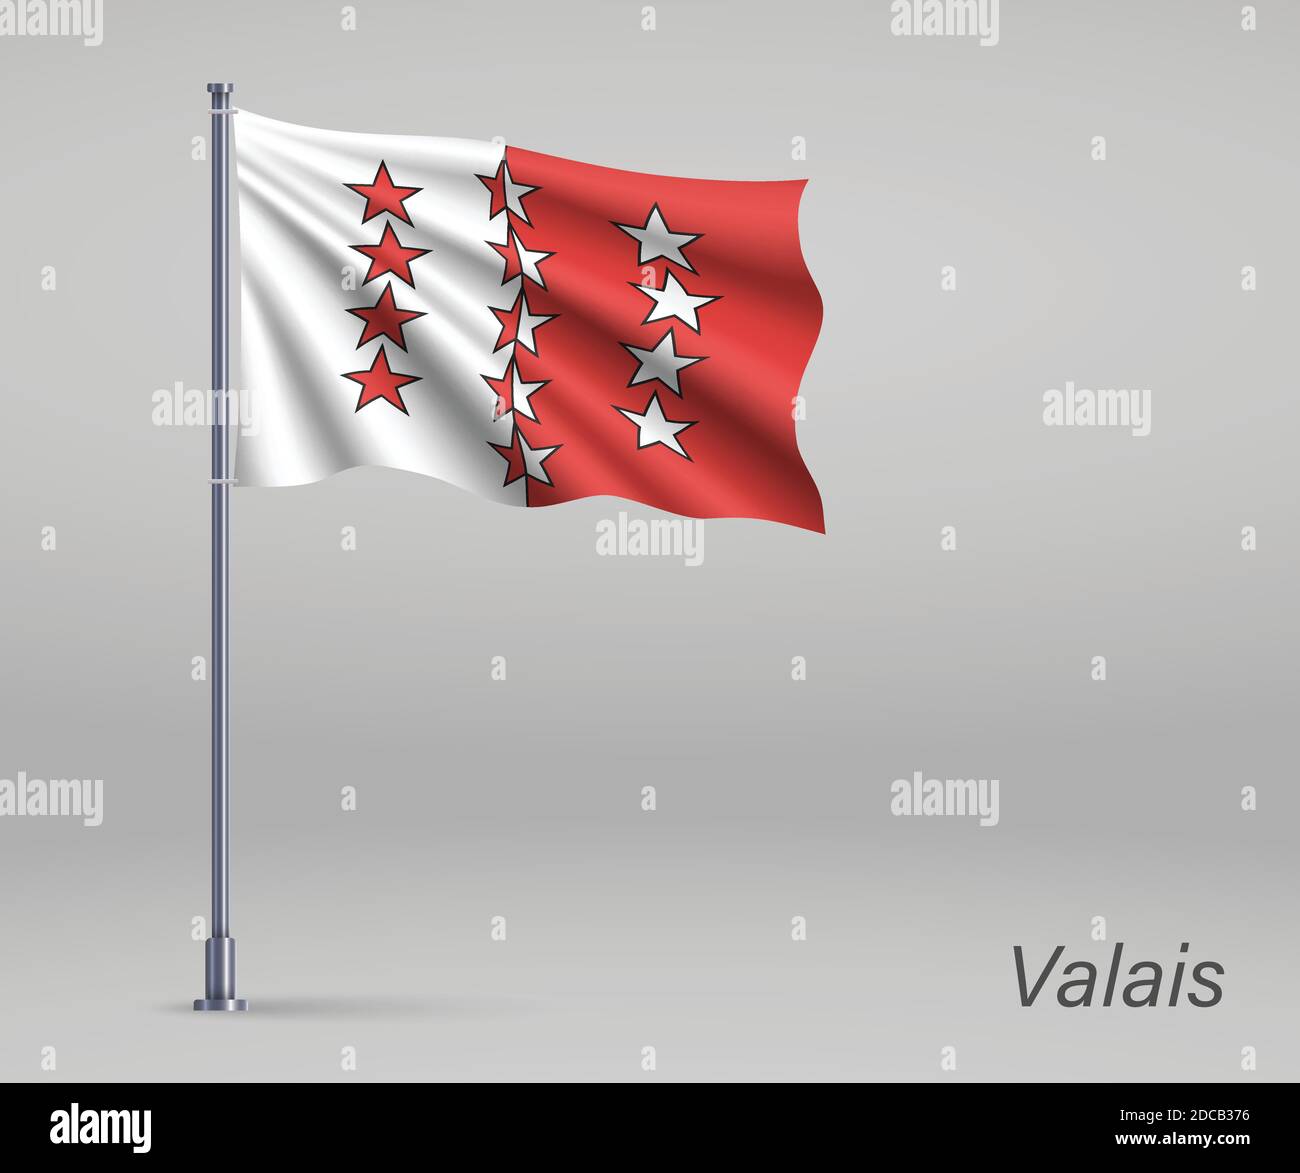 Flagge des Wallis - Kanton Schweiz auf Fahnenmast. Vorlage für Unabhängigkeitstag Stock Vektor